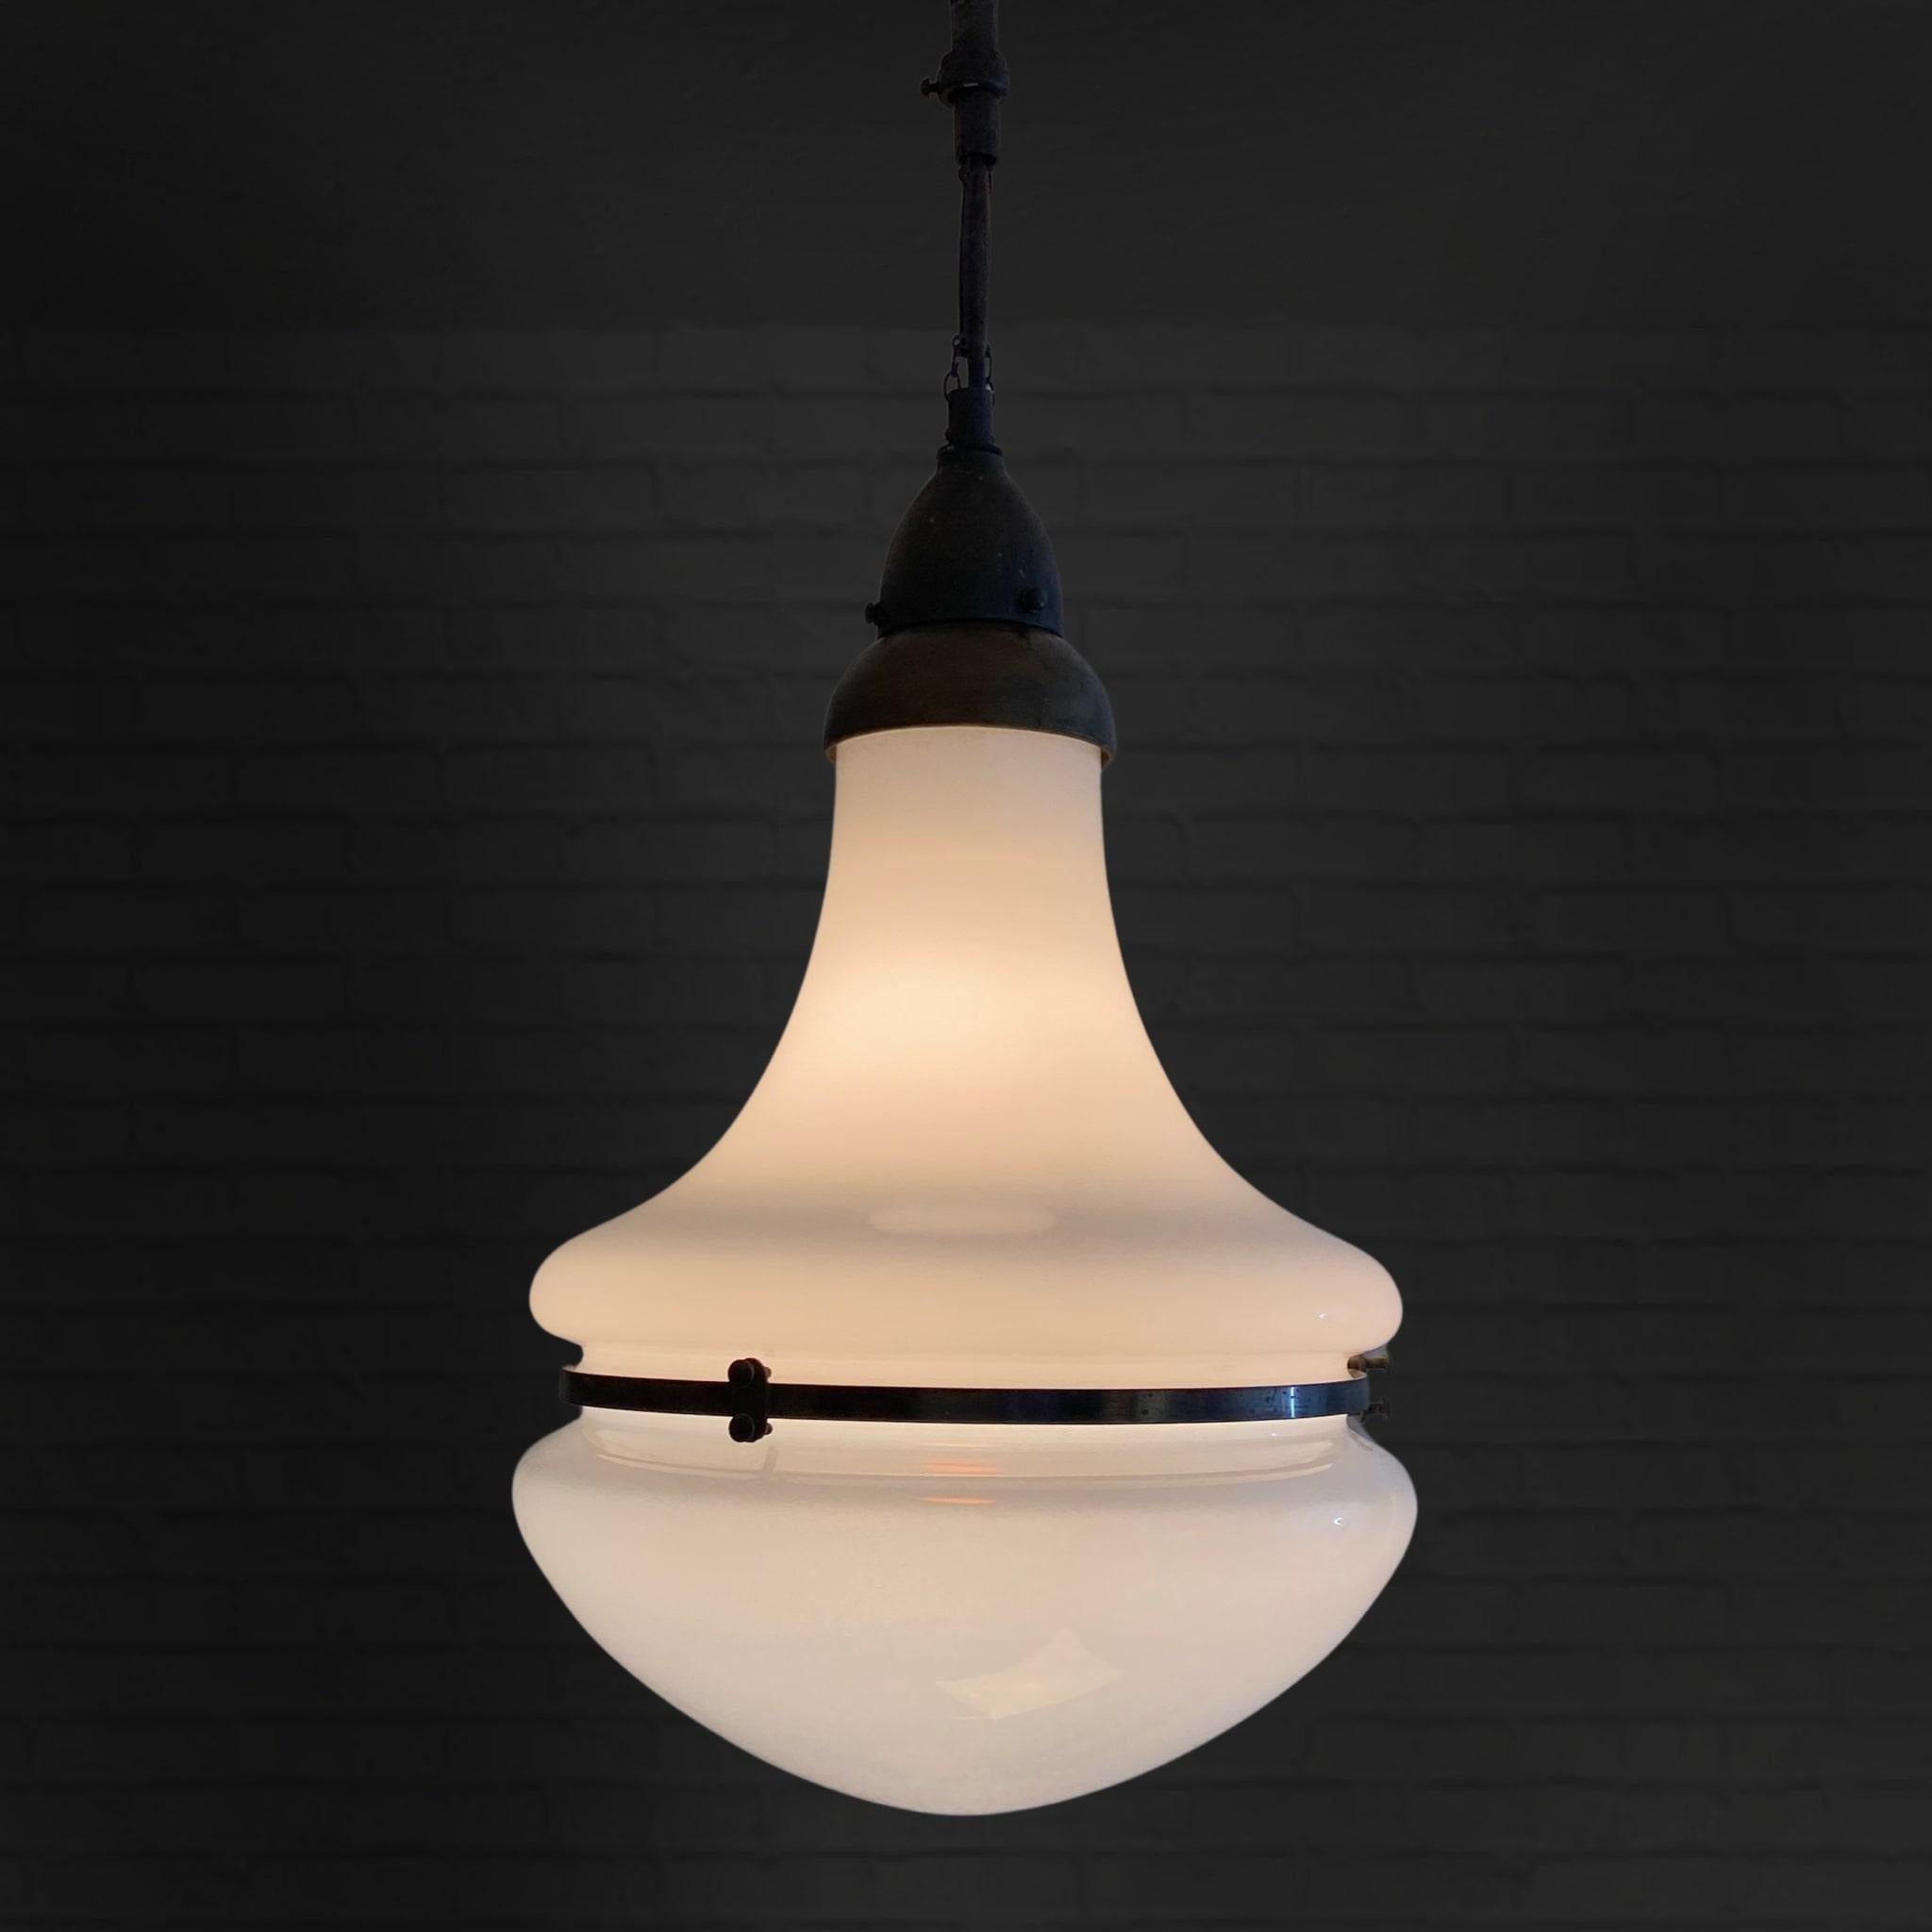 Grande lampe suspendue Luzette, souvent attribuée à l'architecte allemand Peter Behrens. Le modèle a été développé à l'origine pour Siemens-Schuckert vers 1920, mais cet exemple a probablement été produit par ASEA en Suède à la fin des années 1920.